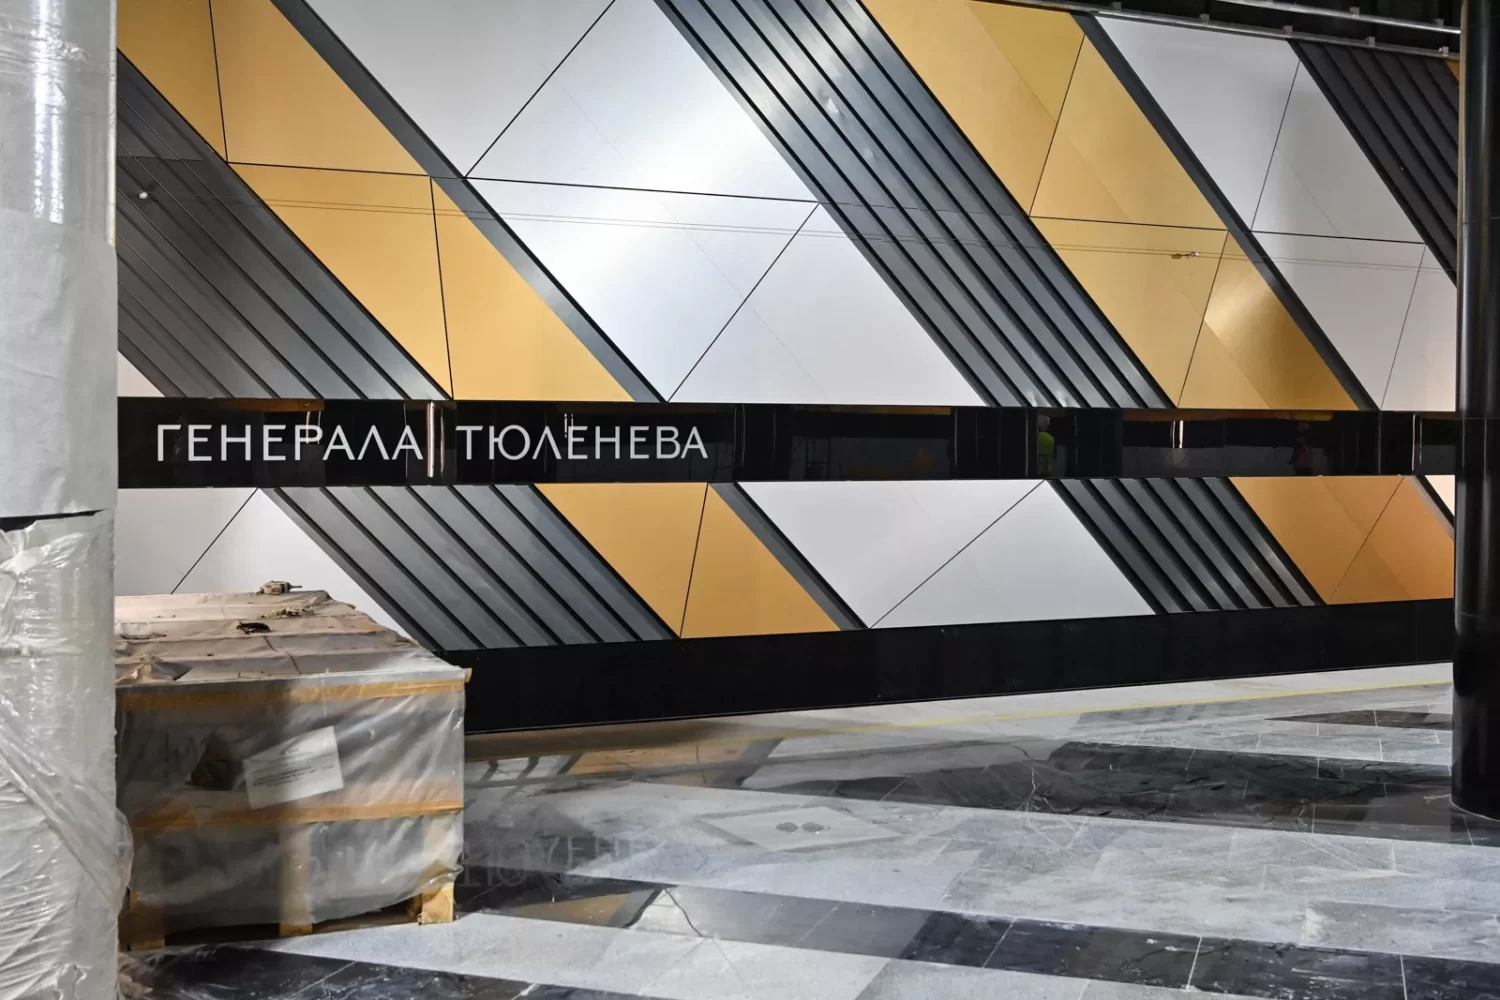 Собянин: станция метро "Генерала Тюленева" находится в высокой степени готовности